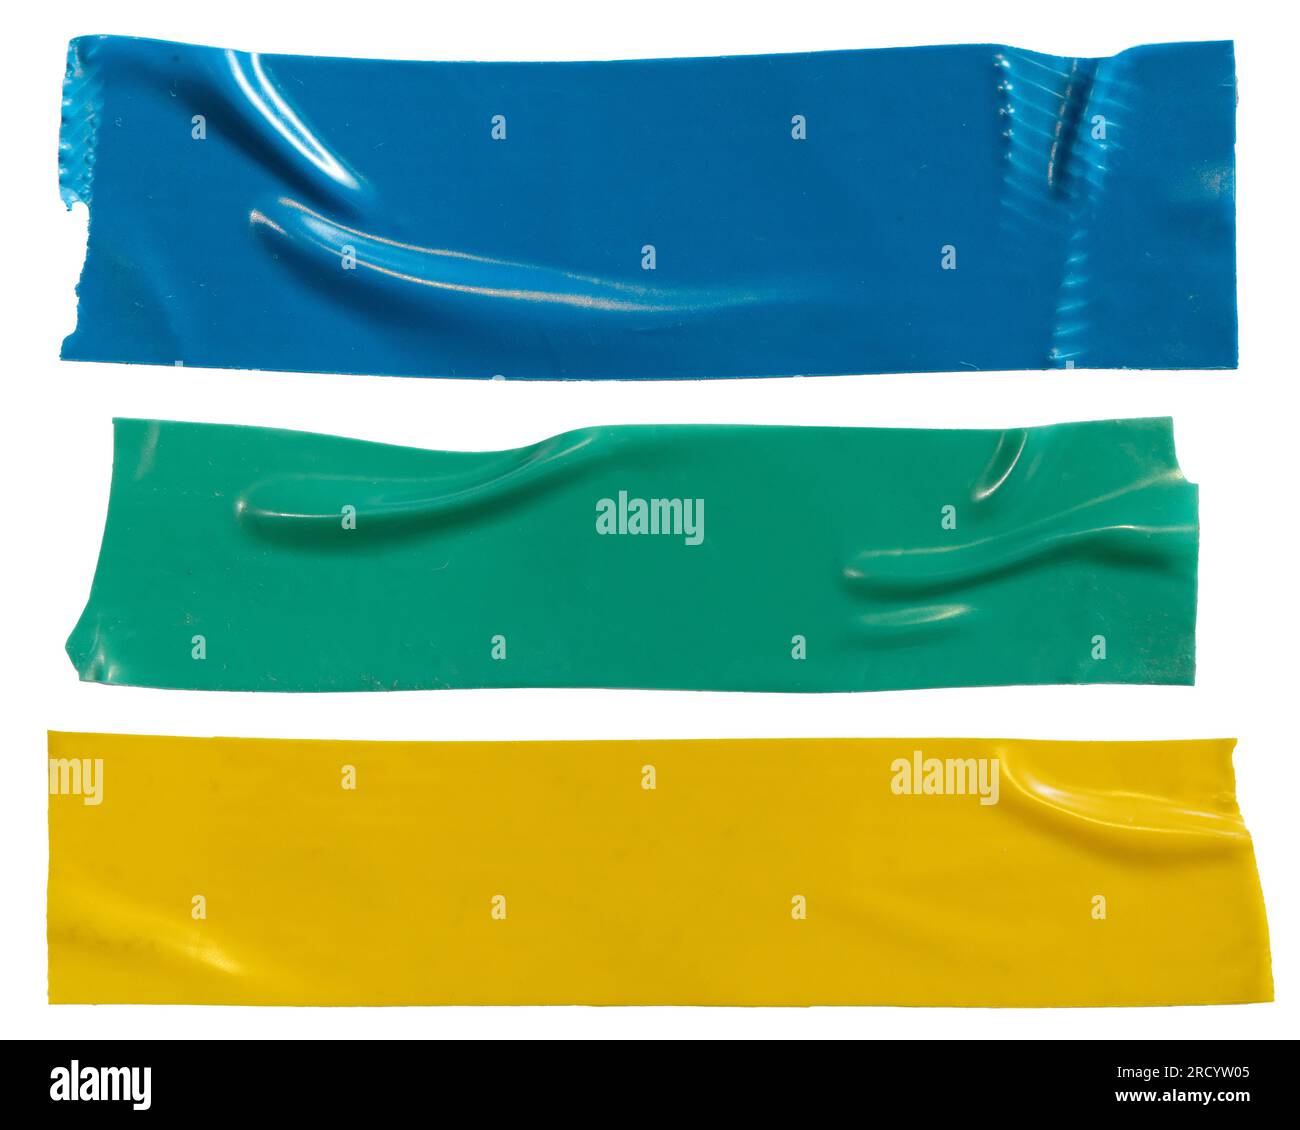 Ruban isolant en plastique bleu, vert et jaune sur fond blanc avec chemin de détourage Banque D'Images